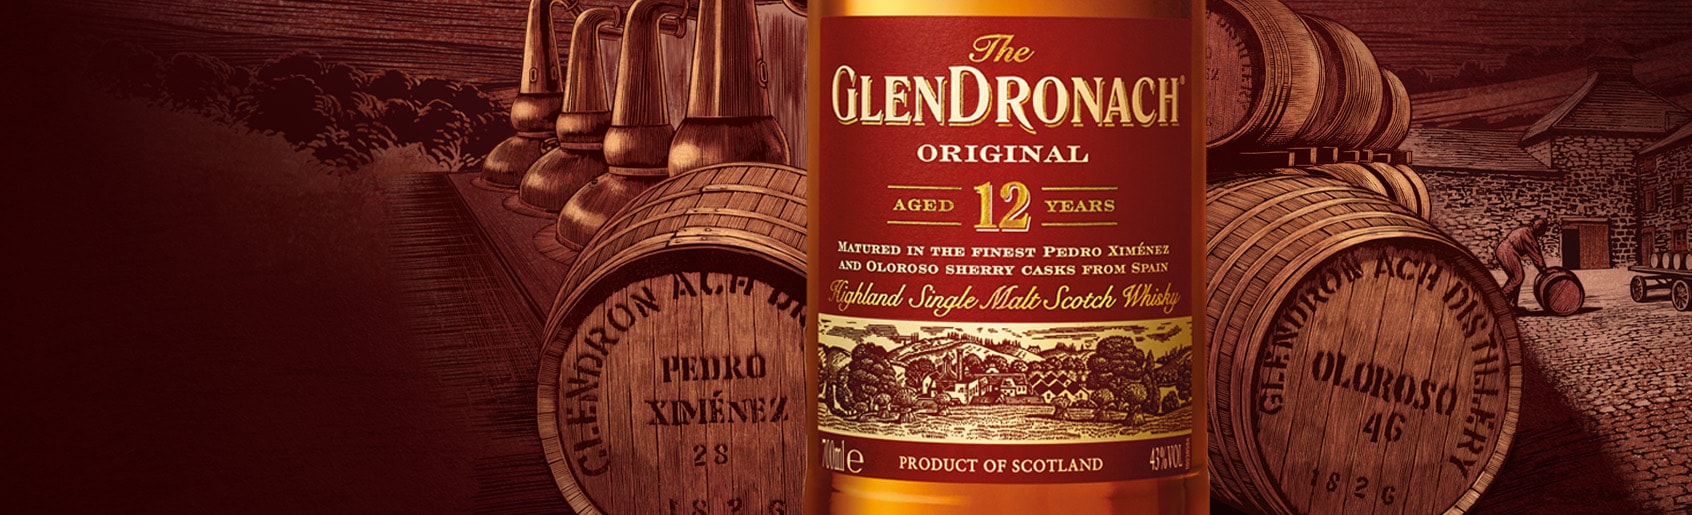 GlenDronach Scotch brands